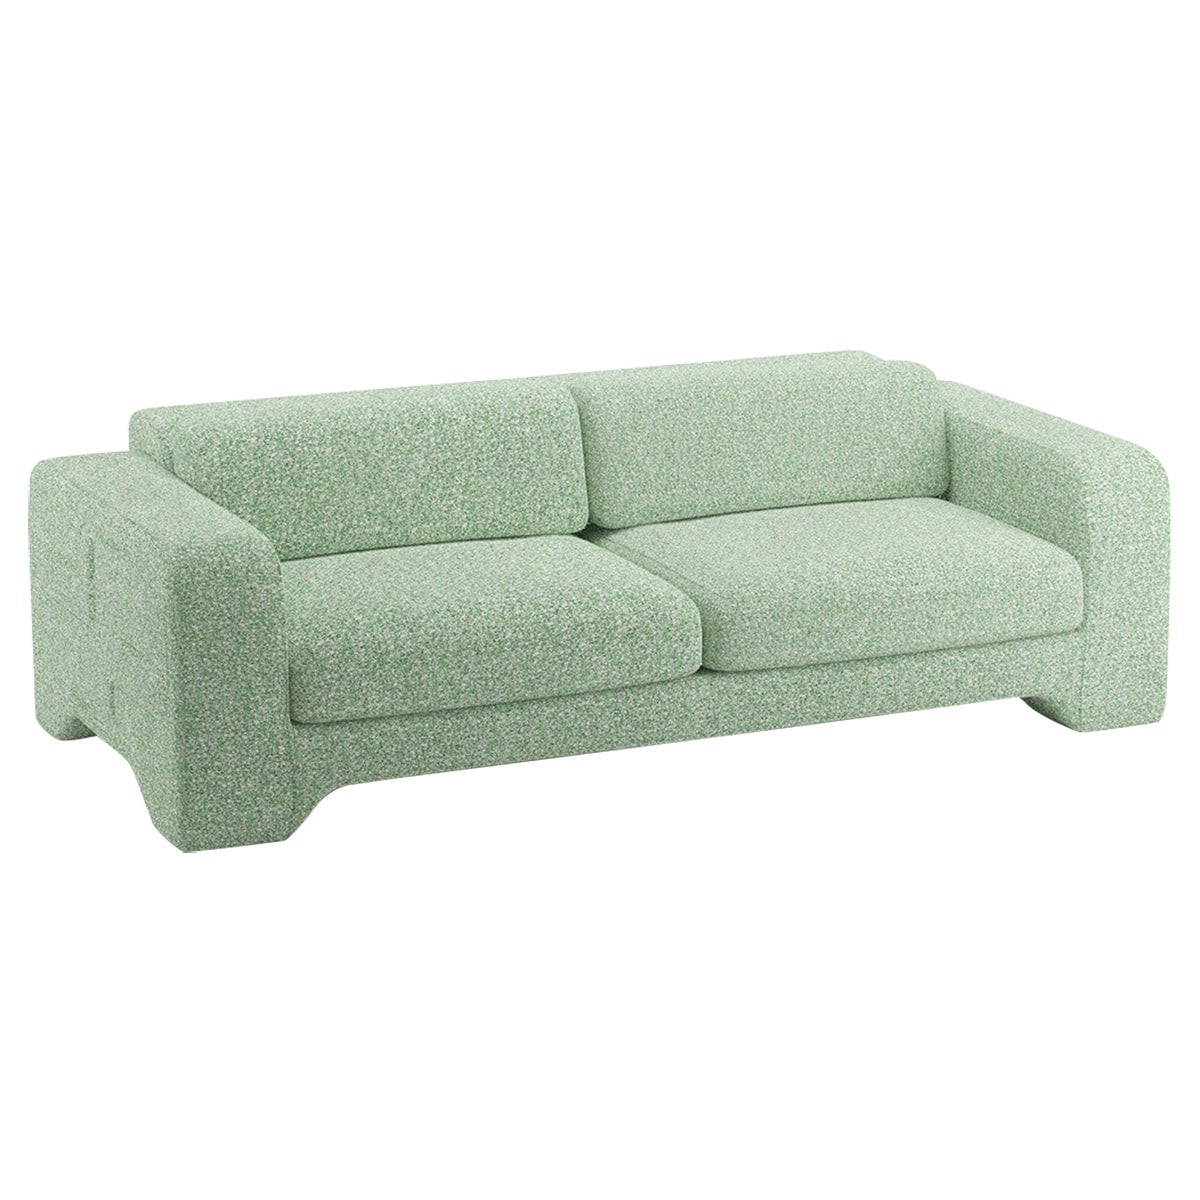 Popus Editions Giovanna 2.5 Seater Sofa in Grass Zanzi Linen Fabric For Sale